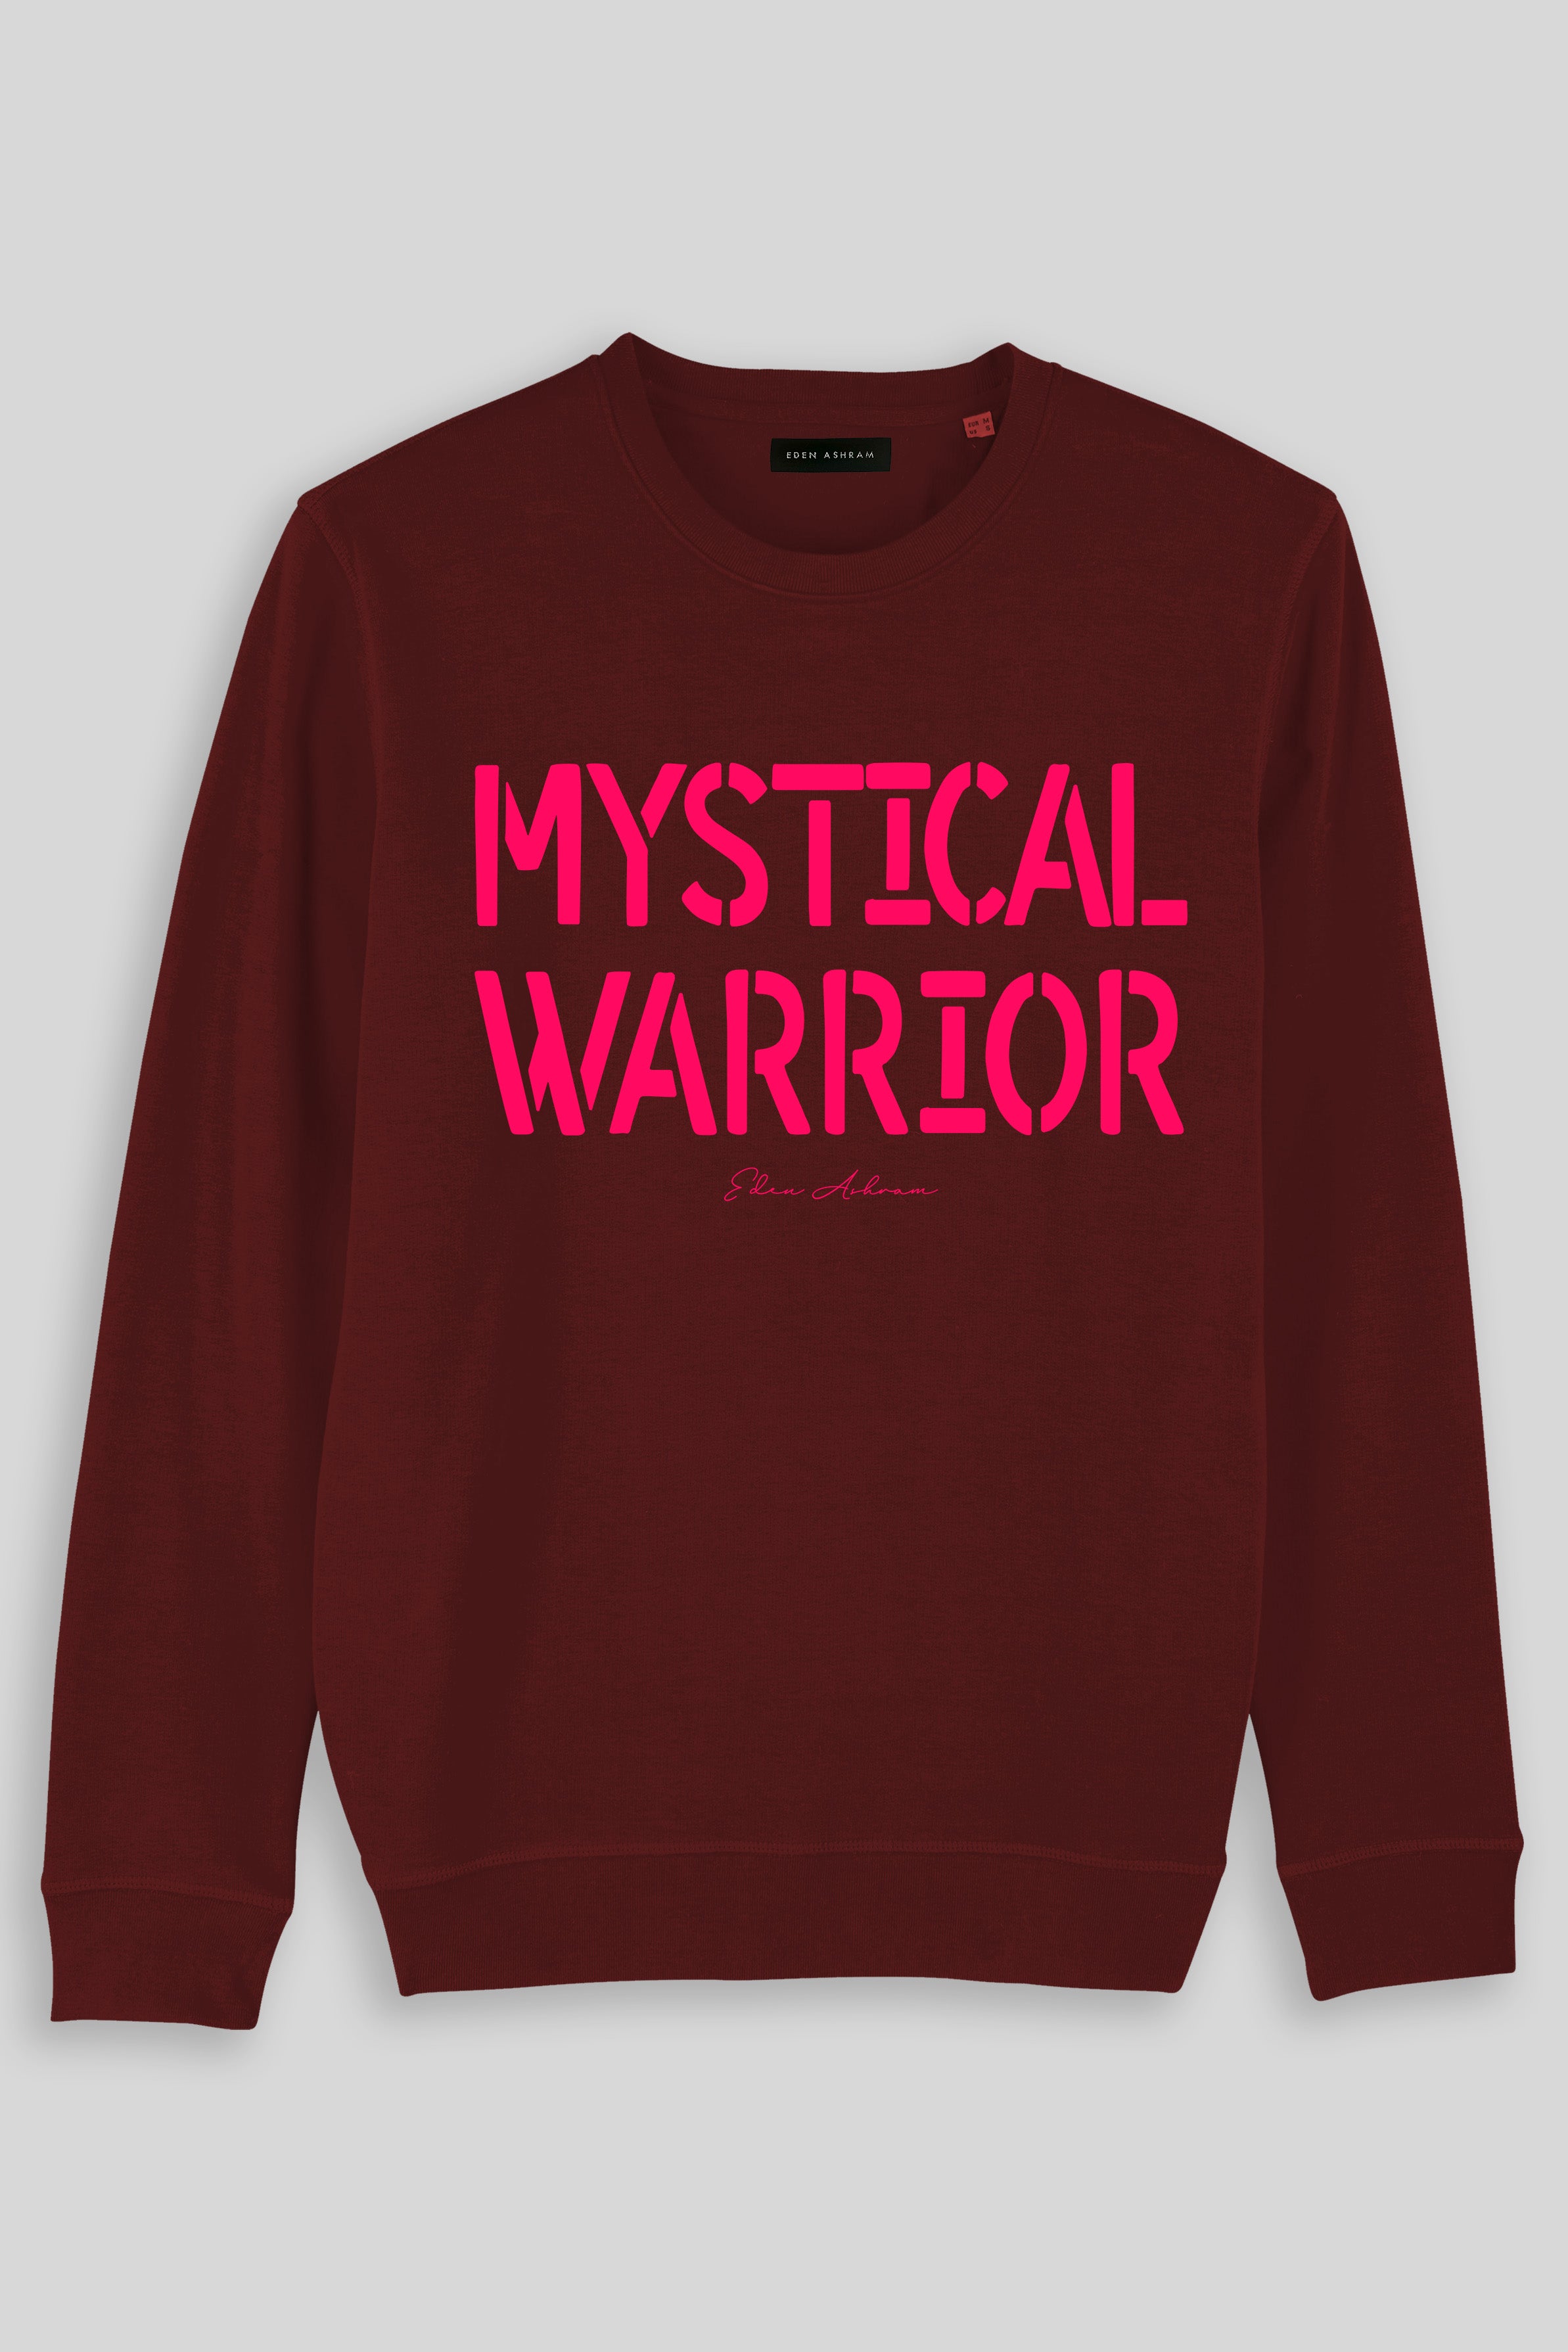 Eden Ashram Mystical Warrior Premium Crew Neck Sweatshirt Burgundy